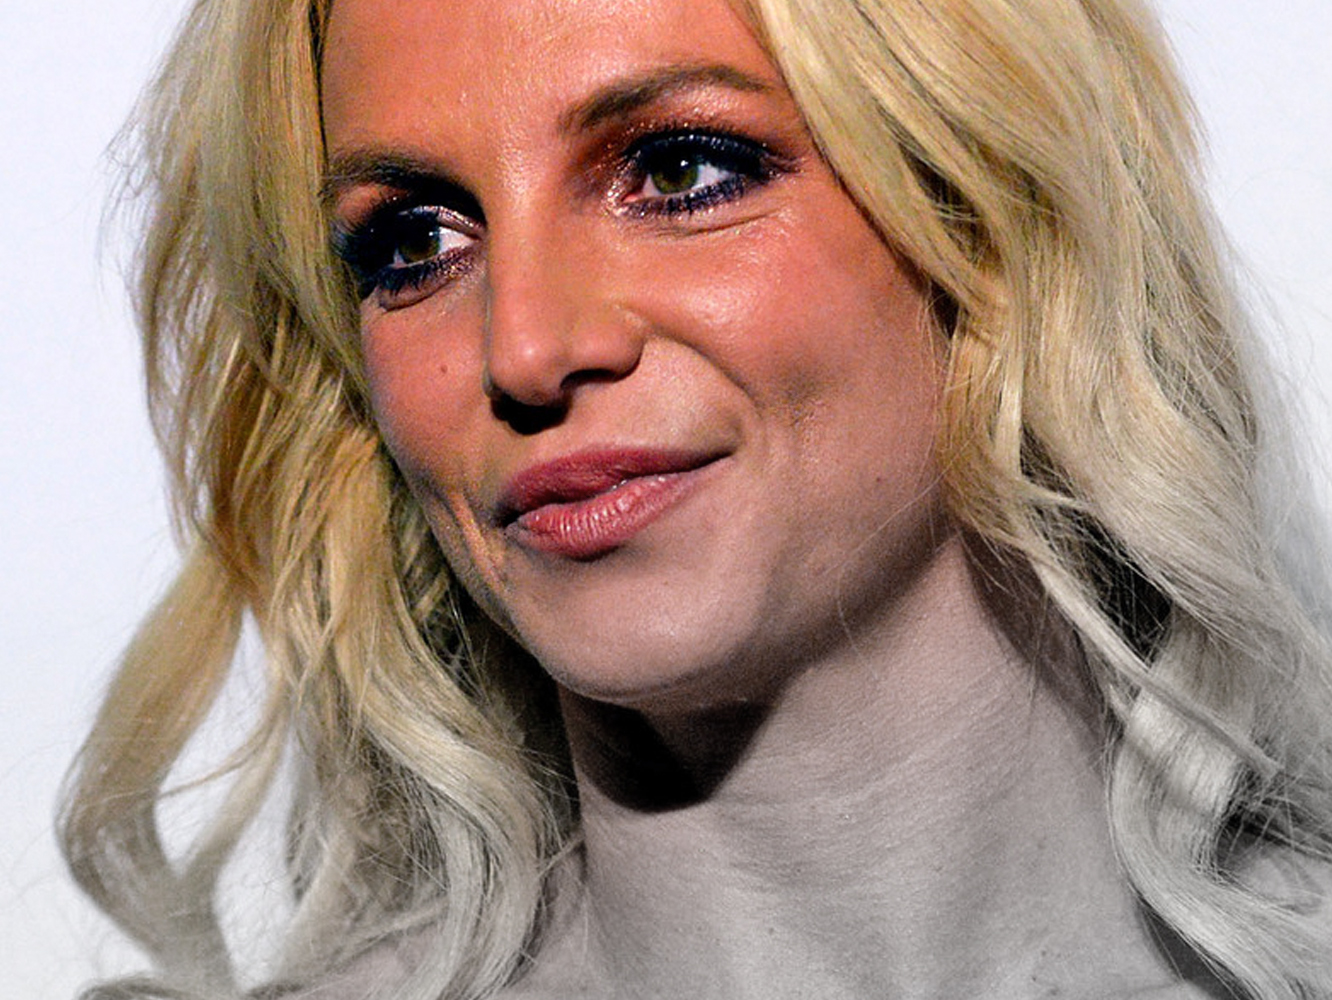 #FreeBritney | Spears confirma a la juez que fue drogada e ingresada contra su voluntad (!)